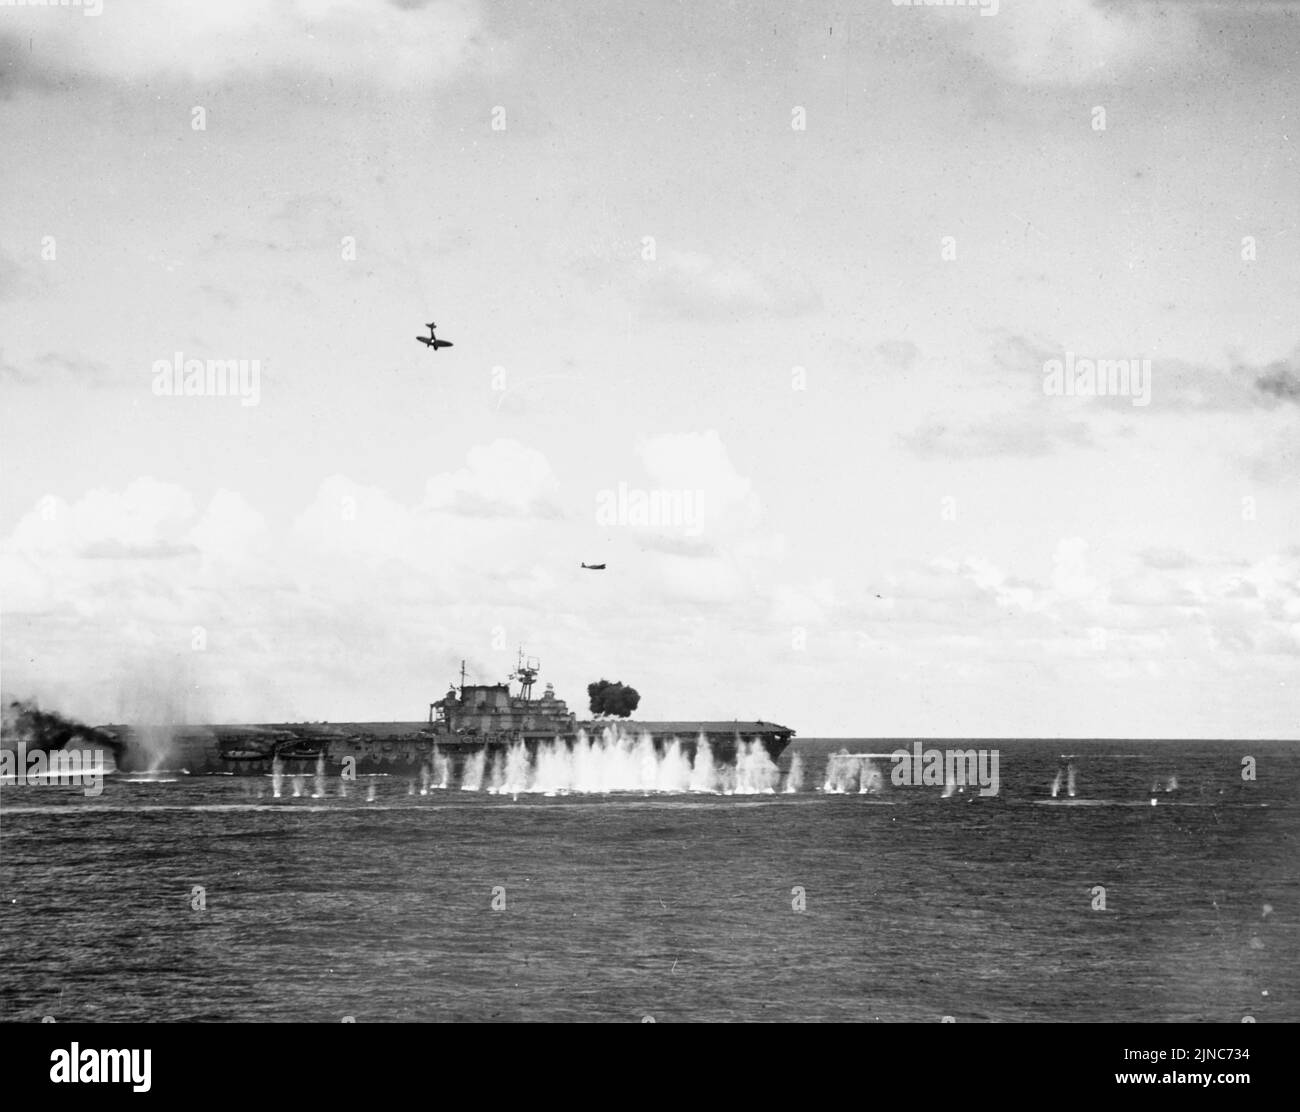 Un bombardier japonais endommagé (en haut à gauche) plonge vers le porte-avions USS Hornet de la Marine américaine pendant la bataille de Santa Cruz, le 26 octobre 1942. Banque D'Images